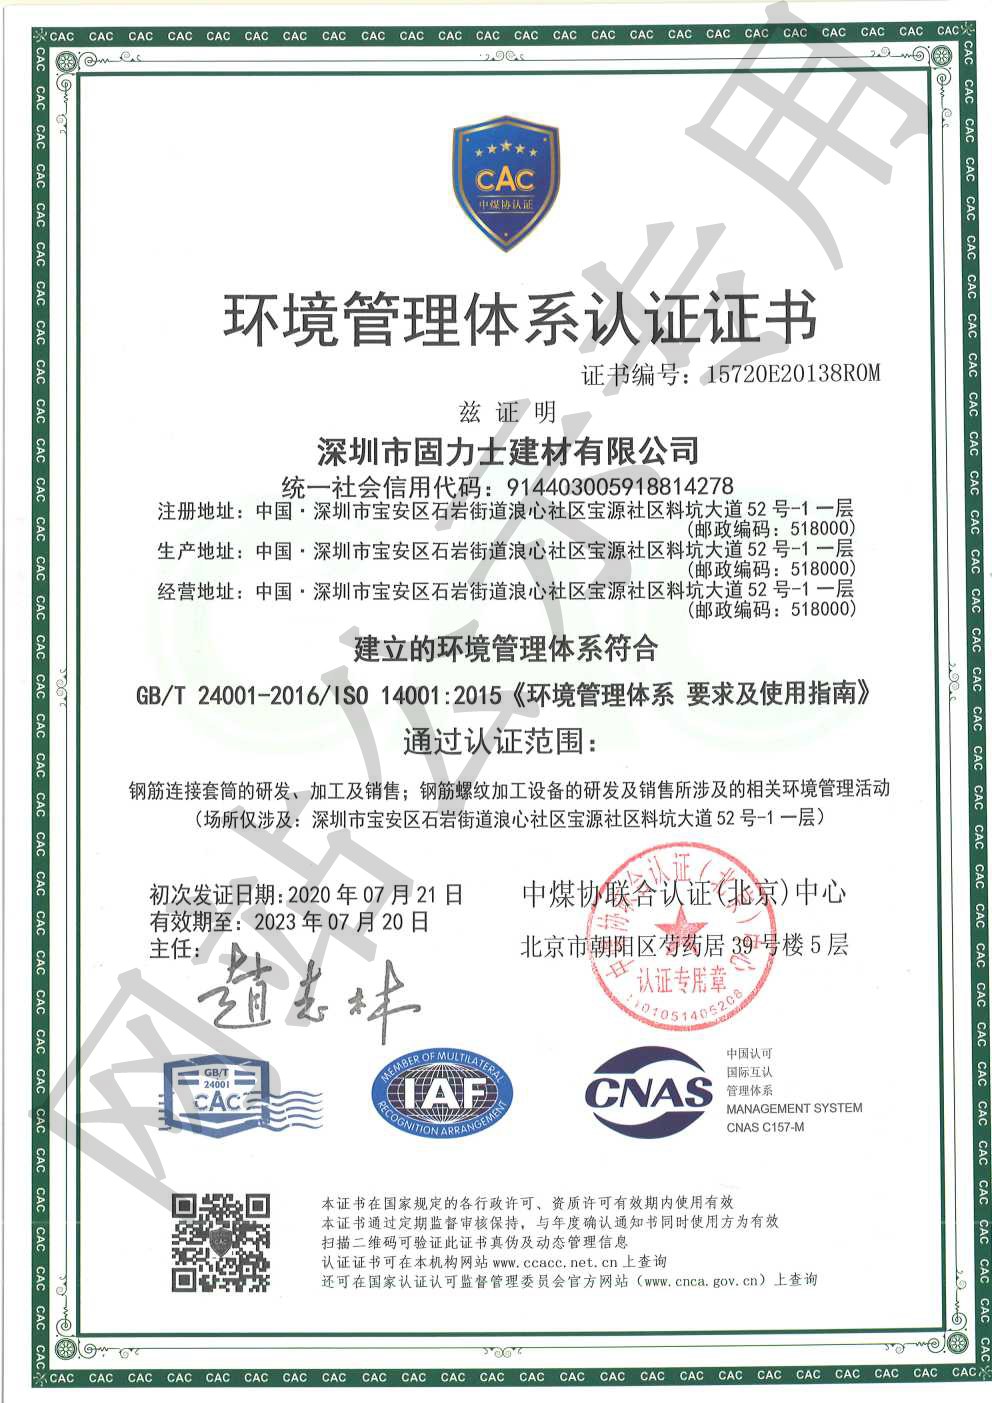 祁门ISO14001证书